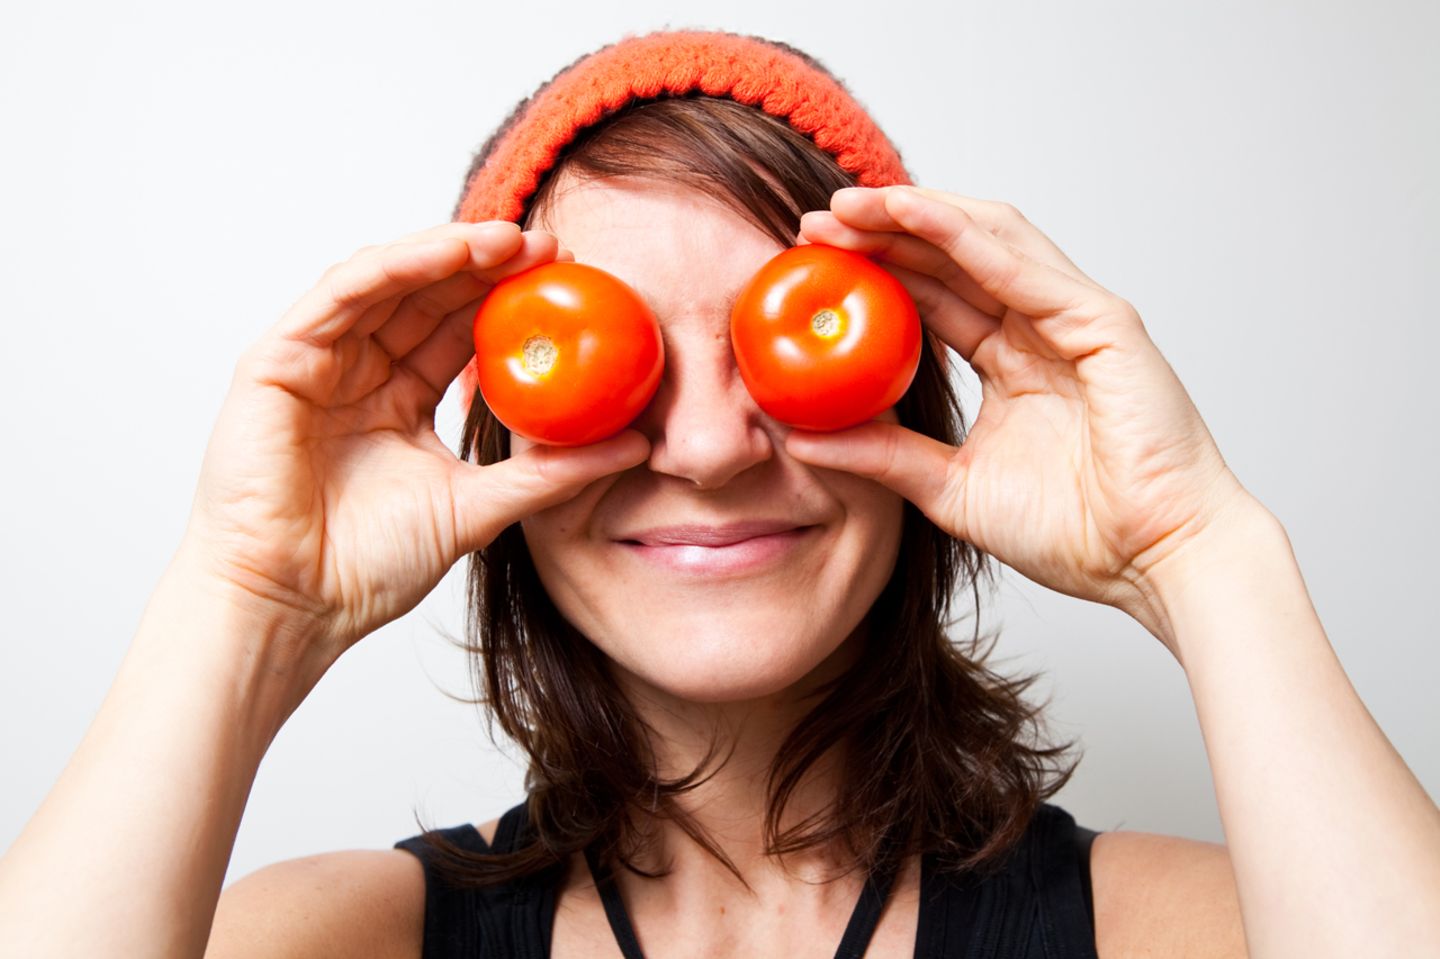 Redewendung: Diese Frau hat wortwörtlich Tomaten auf den Augen